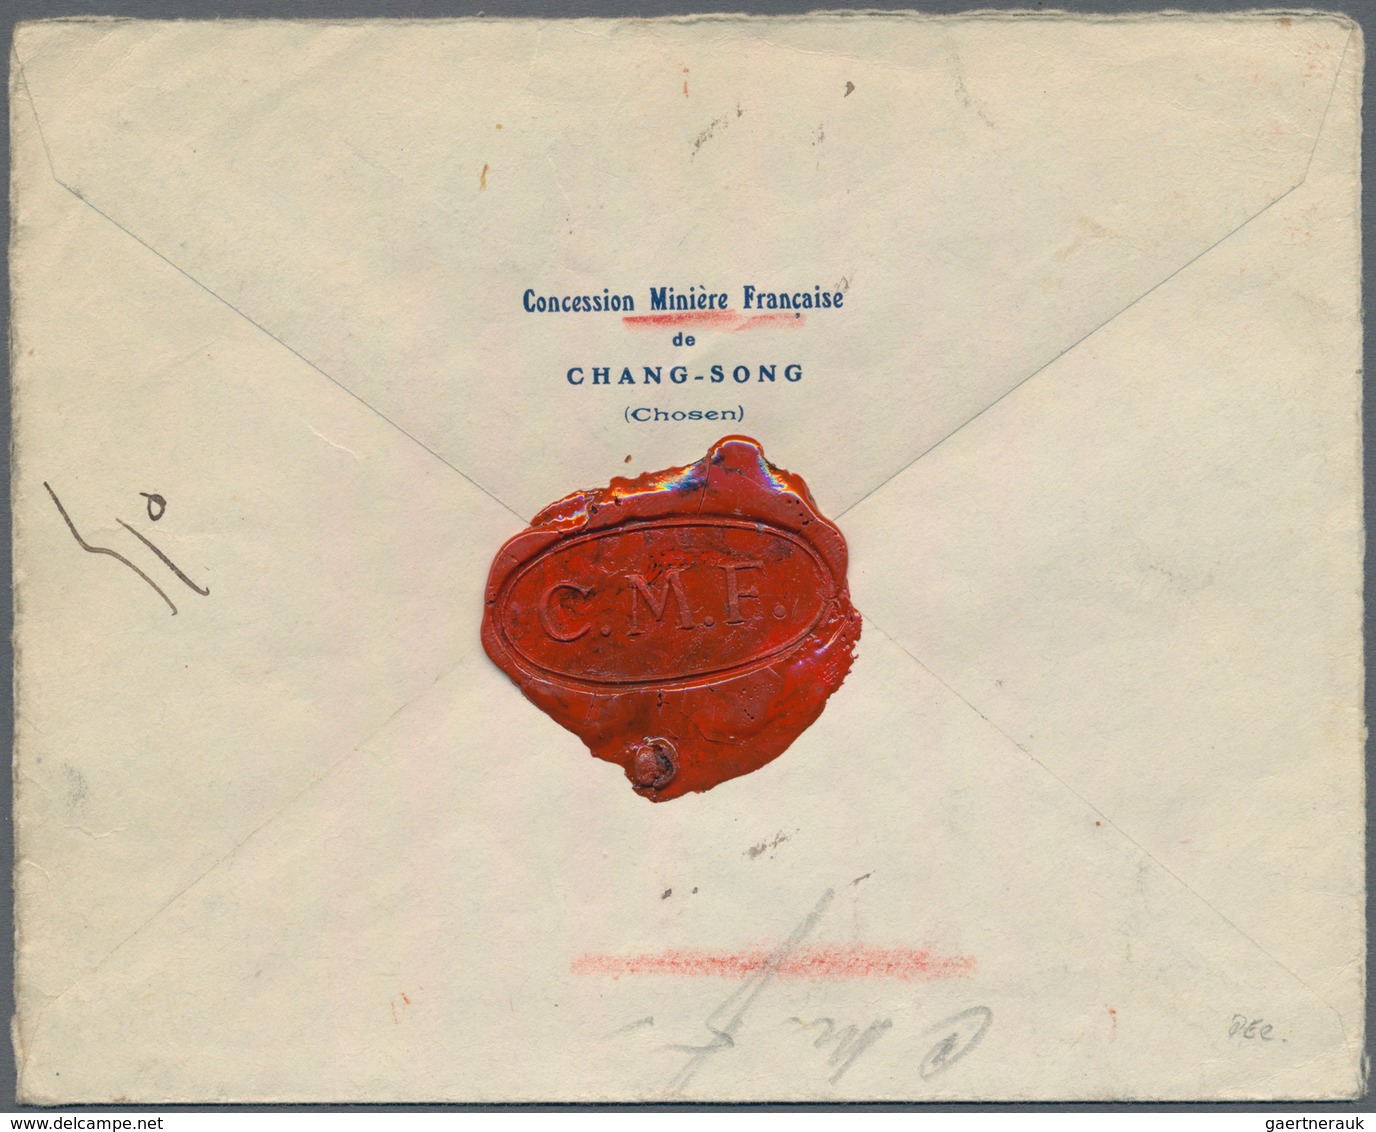 Japanische Post In Korea: 1899, Kiku 20 S. Canc. Korea Type "Daelanok 3.5.2" (May 2, 1914) To Regist - Militaire Vrijstelling Van Portkosten